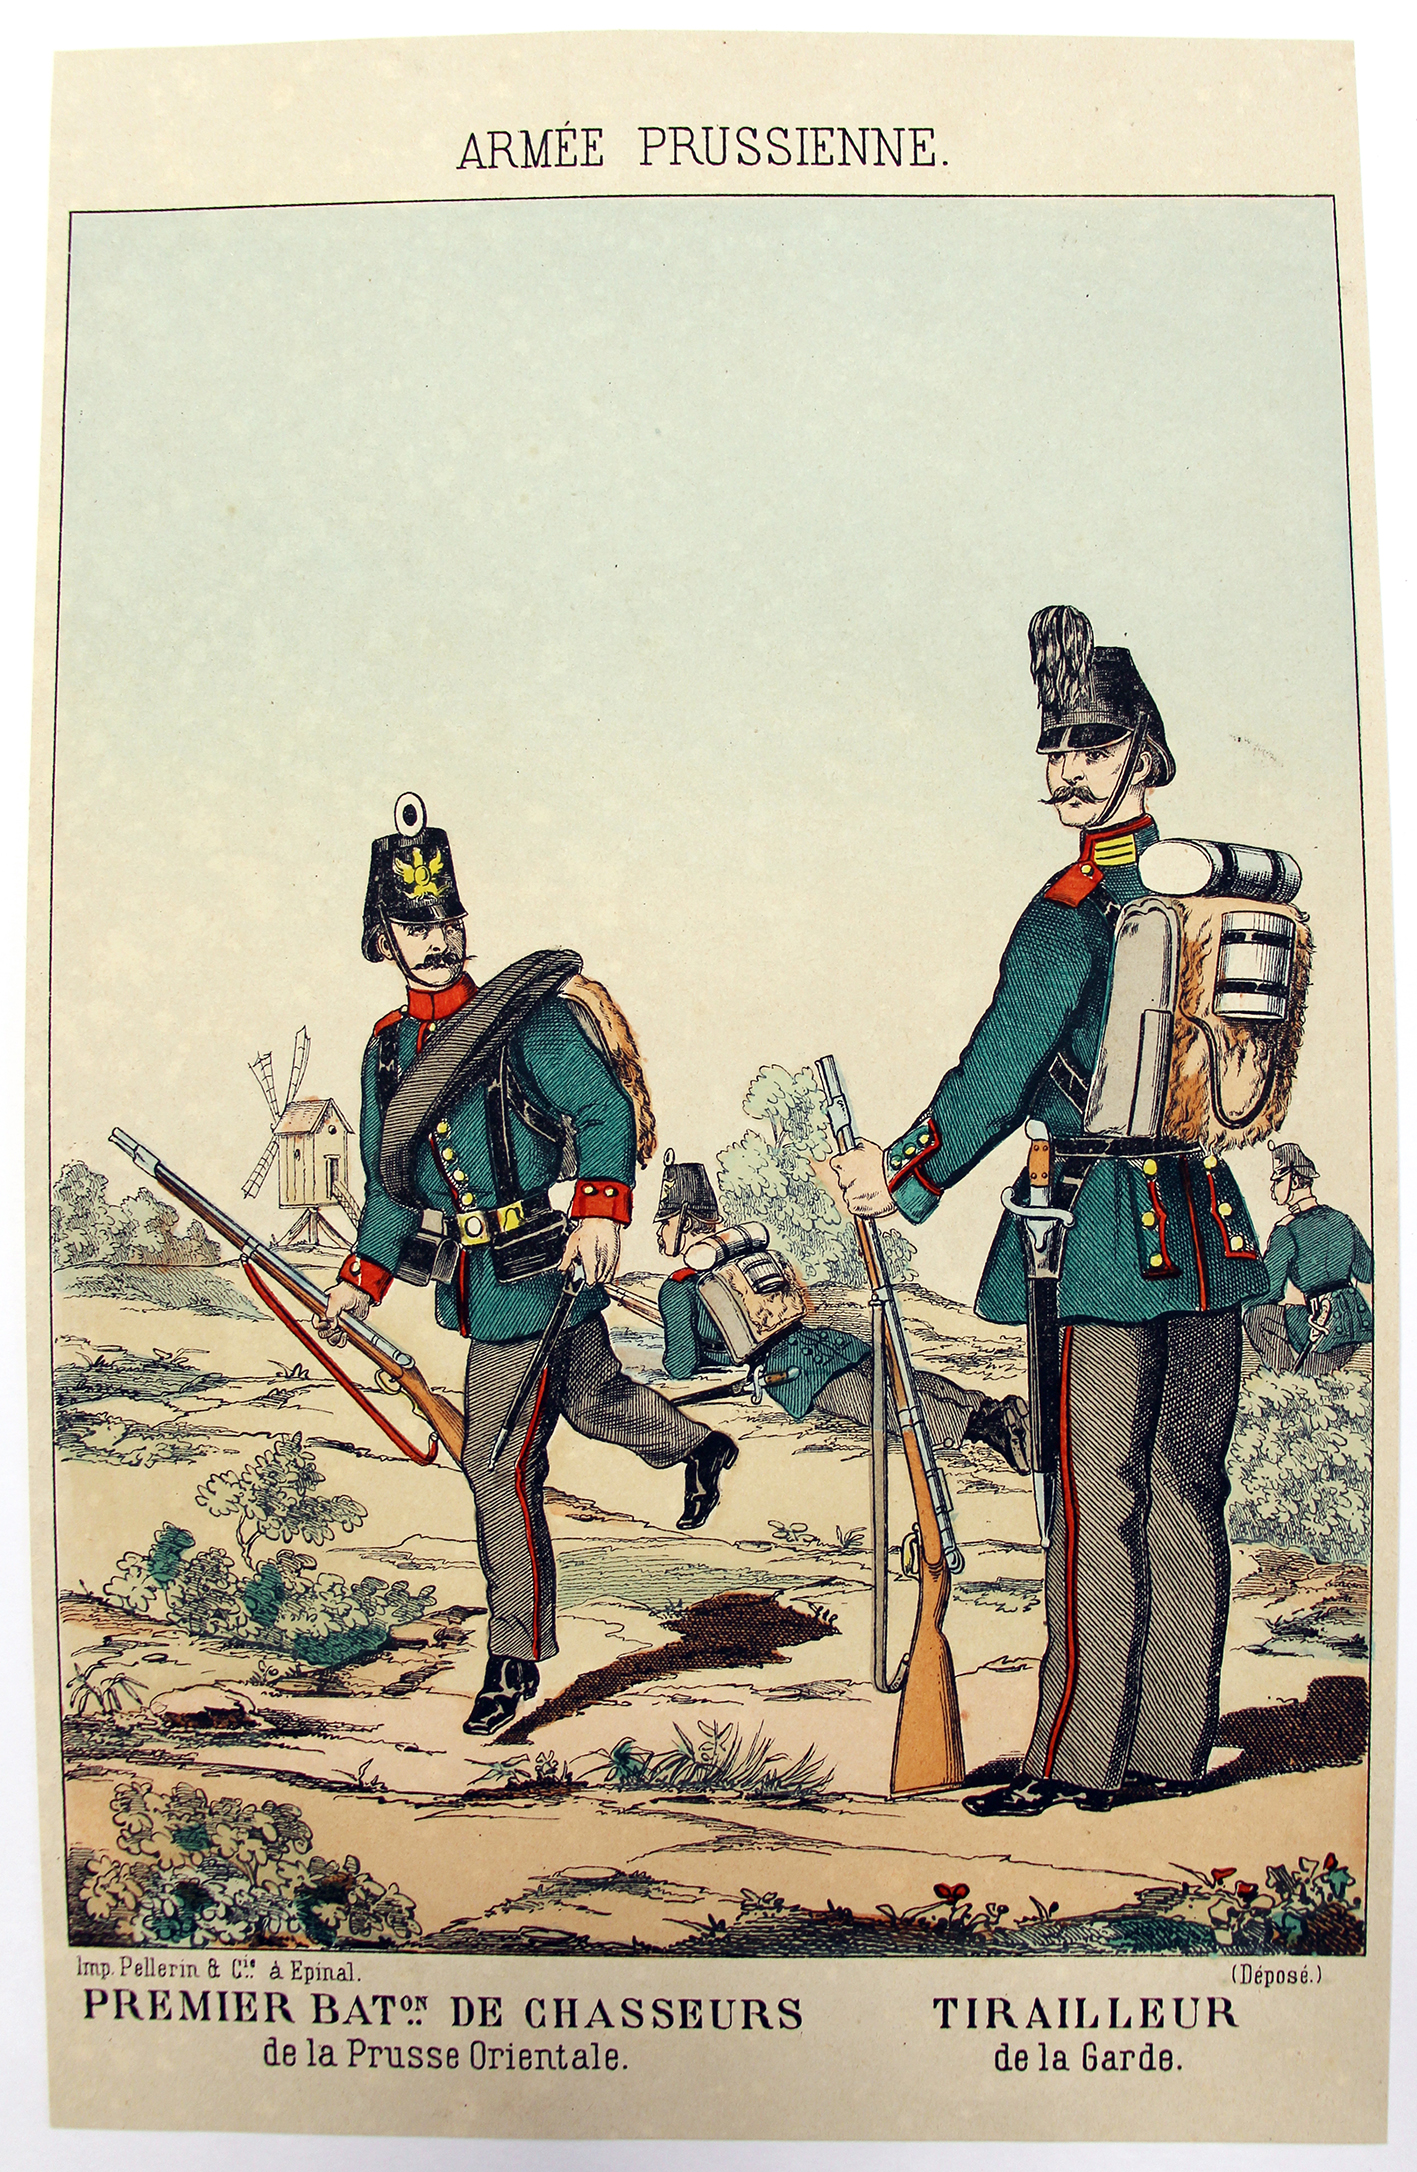 4 Gravures - Uniforme Prusse - Armée Second Empire - 1870 - Uniformes - Imagerie Epinal Pellerin - Imagerie Populaire -